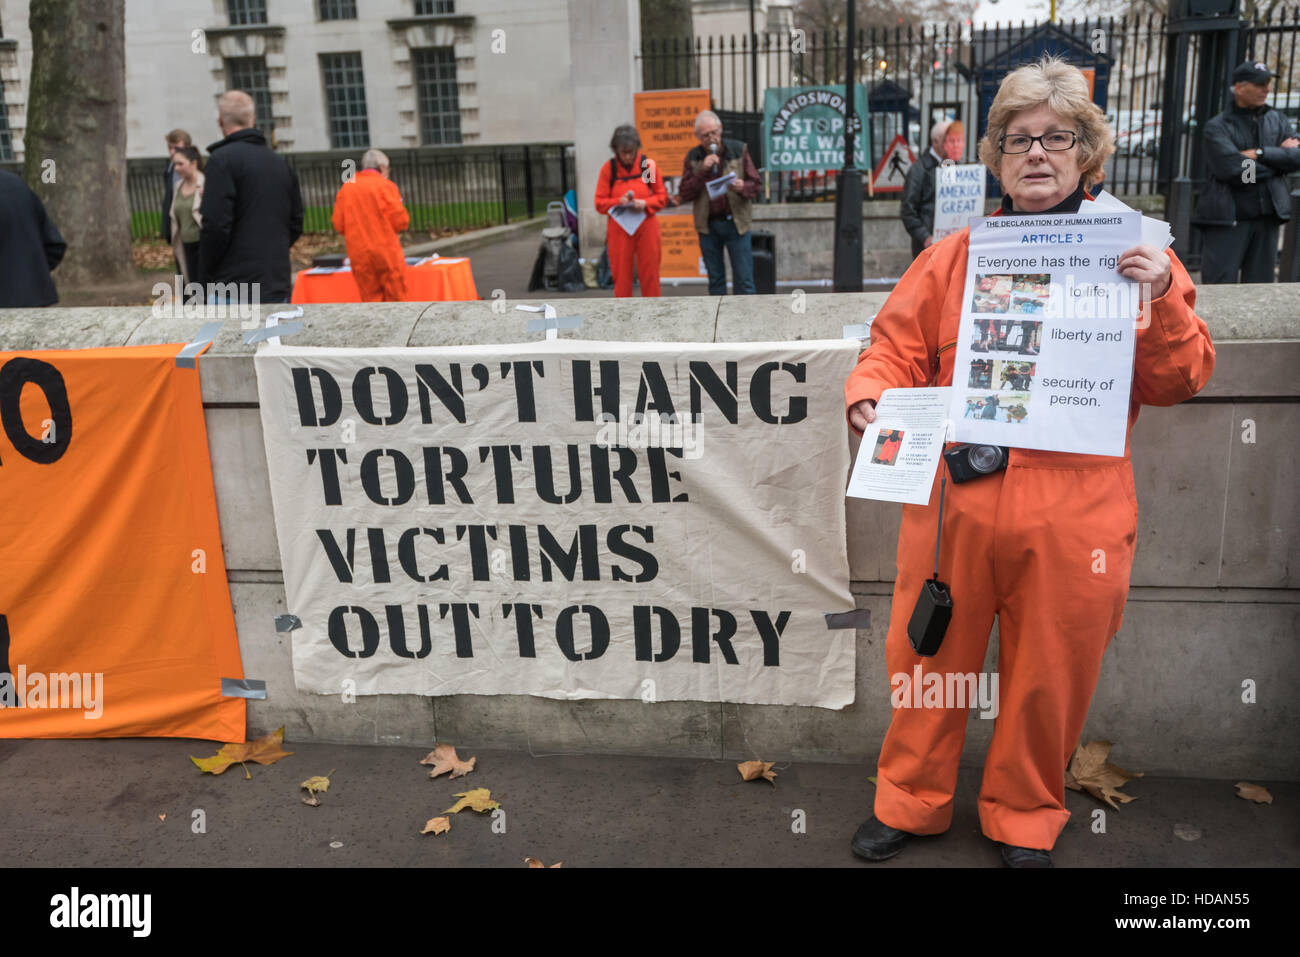 London, UK. 10. Dezember 2016. Eine Frau in einem orange Sprunganzug hält ein Plakat mit Articlel 3 der Erklärung der Menschenrechte "Jeder hat das Recht auf Leben, Freiheit und Sicherheit der Person" in Guantanamo Gerechtigkeit Kampagne Protest am Tag der Menschenrechte der Vereinten Nationen gegenüber Downing St Berufung für ein Ende der Folter, der Schließung von Guantánamo und ein Ende der britischen Mitschuld an Folter. Peter Marshall/Alamy Live-Nachrichten Stockfoto